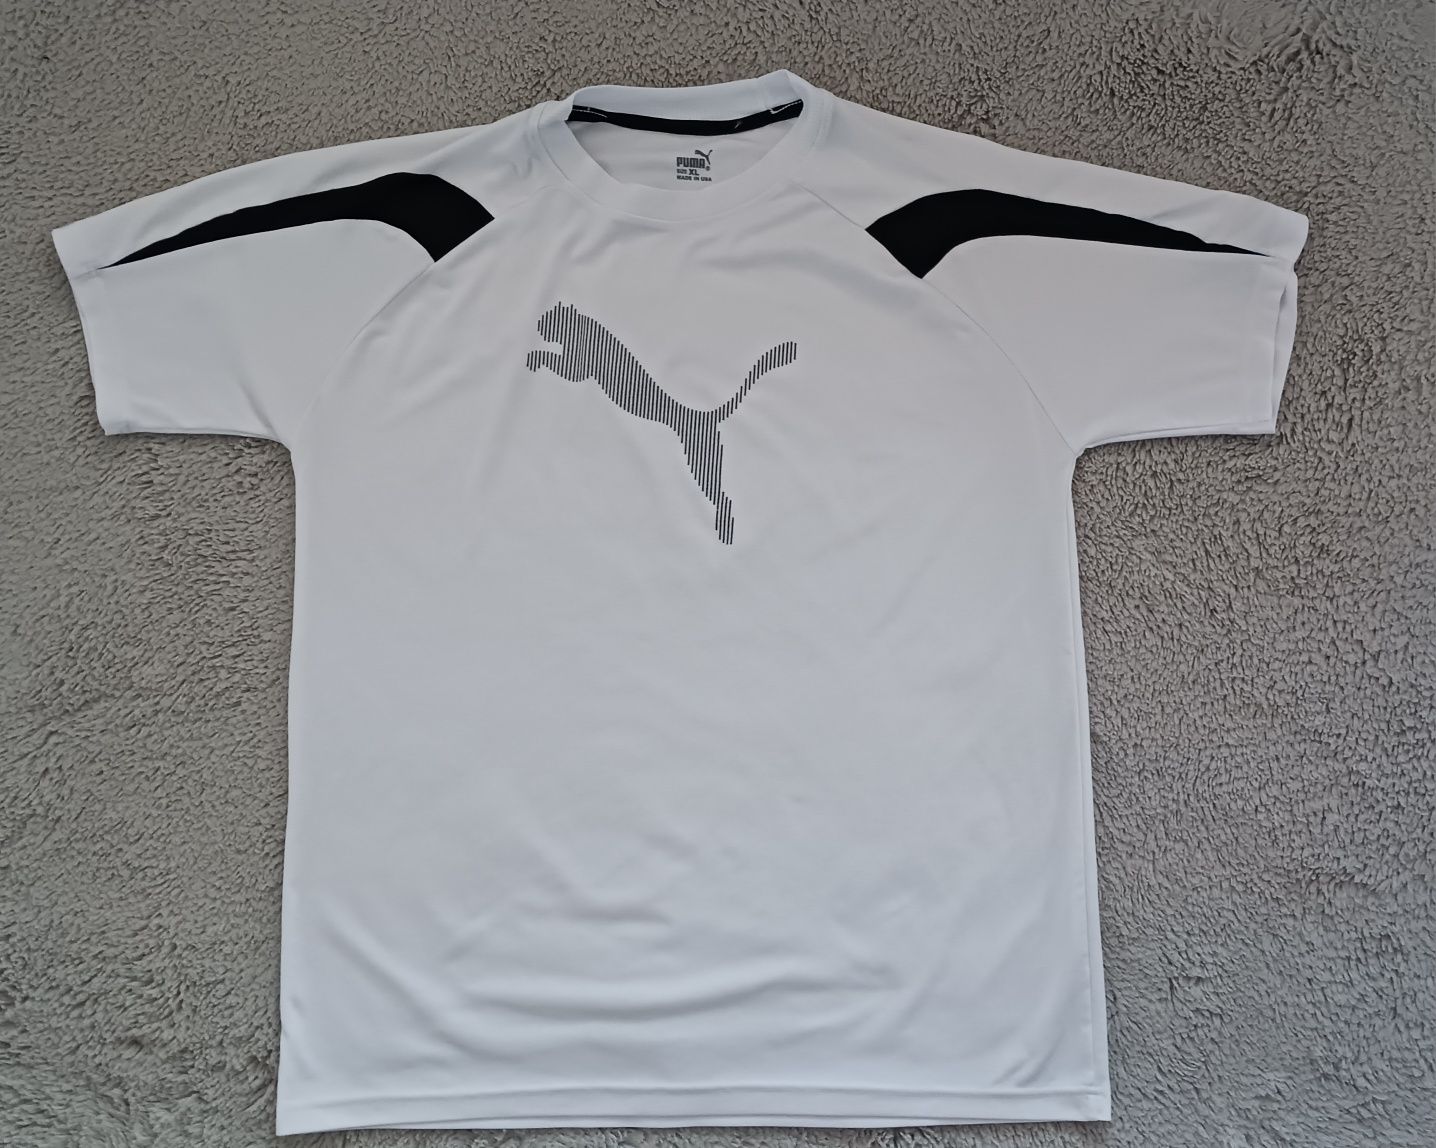 Męski sportowy biały t-shirt PUMA. Rozm. XL